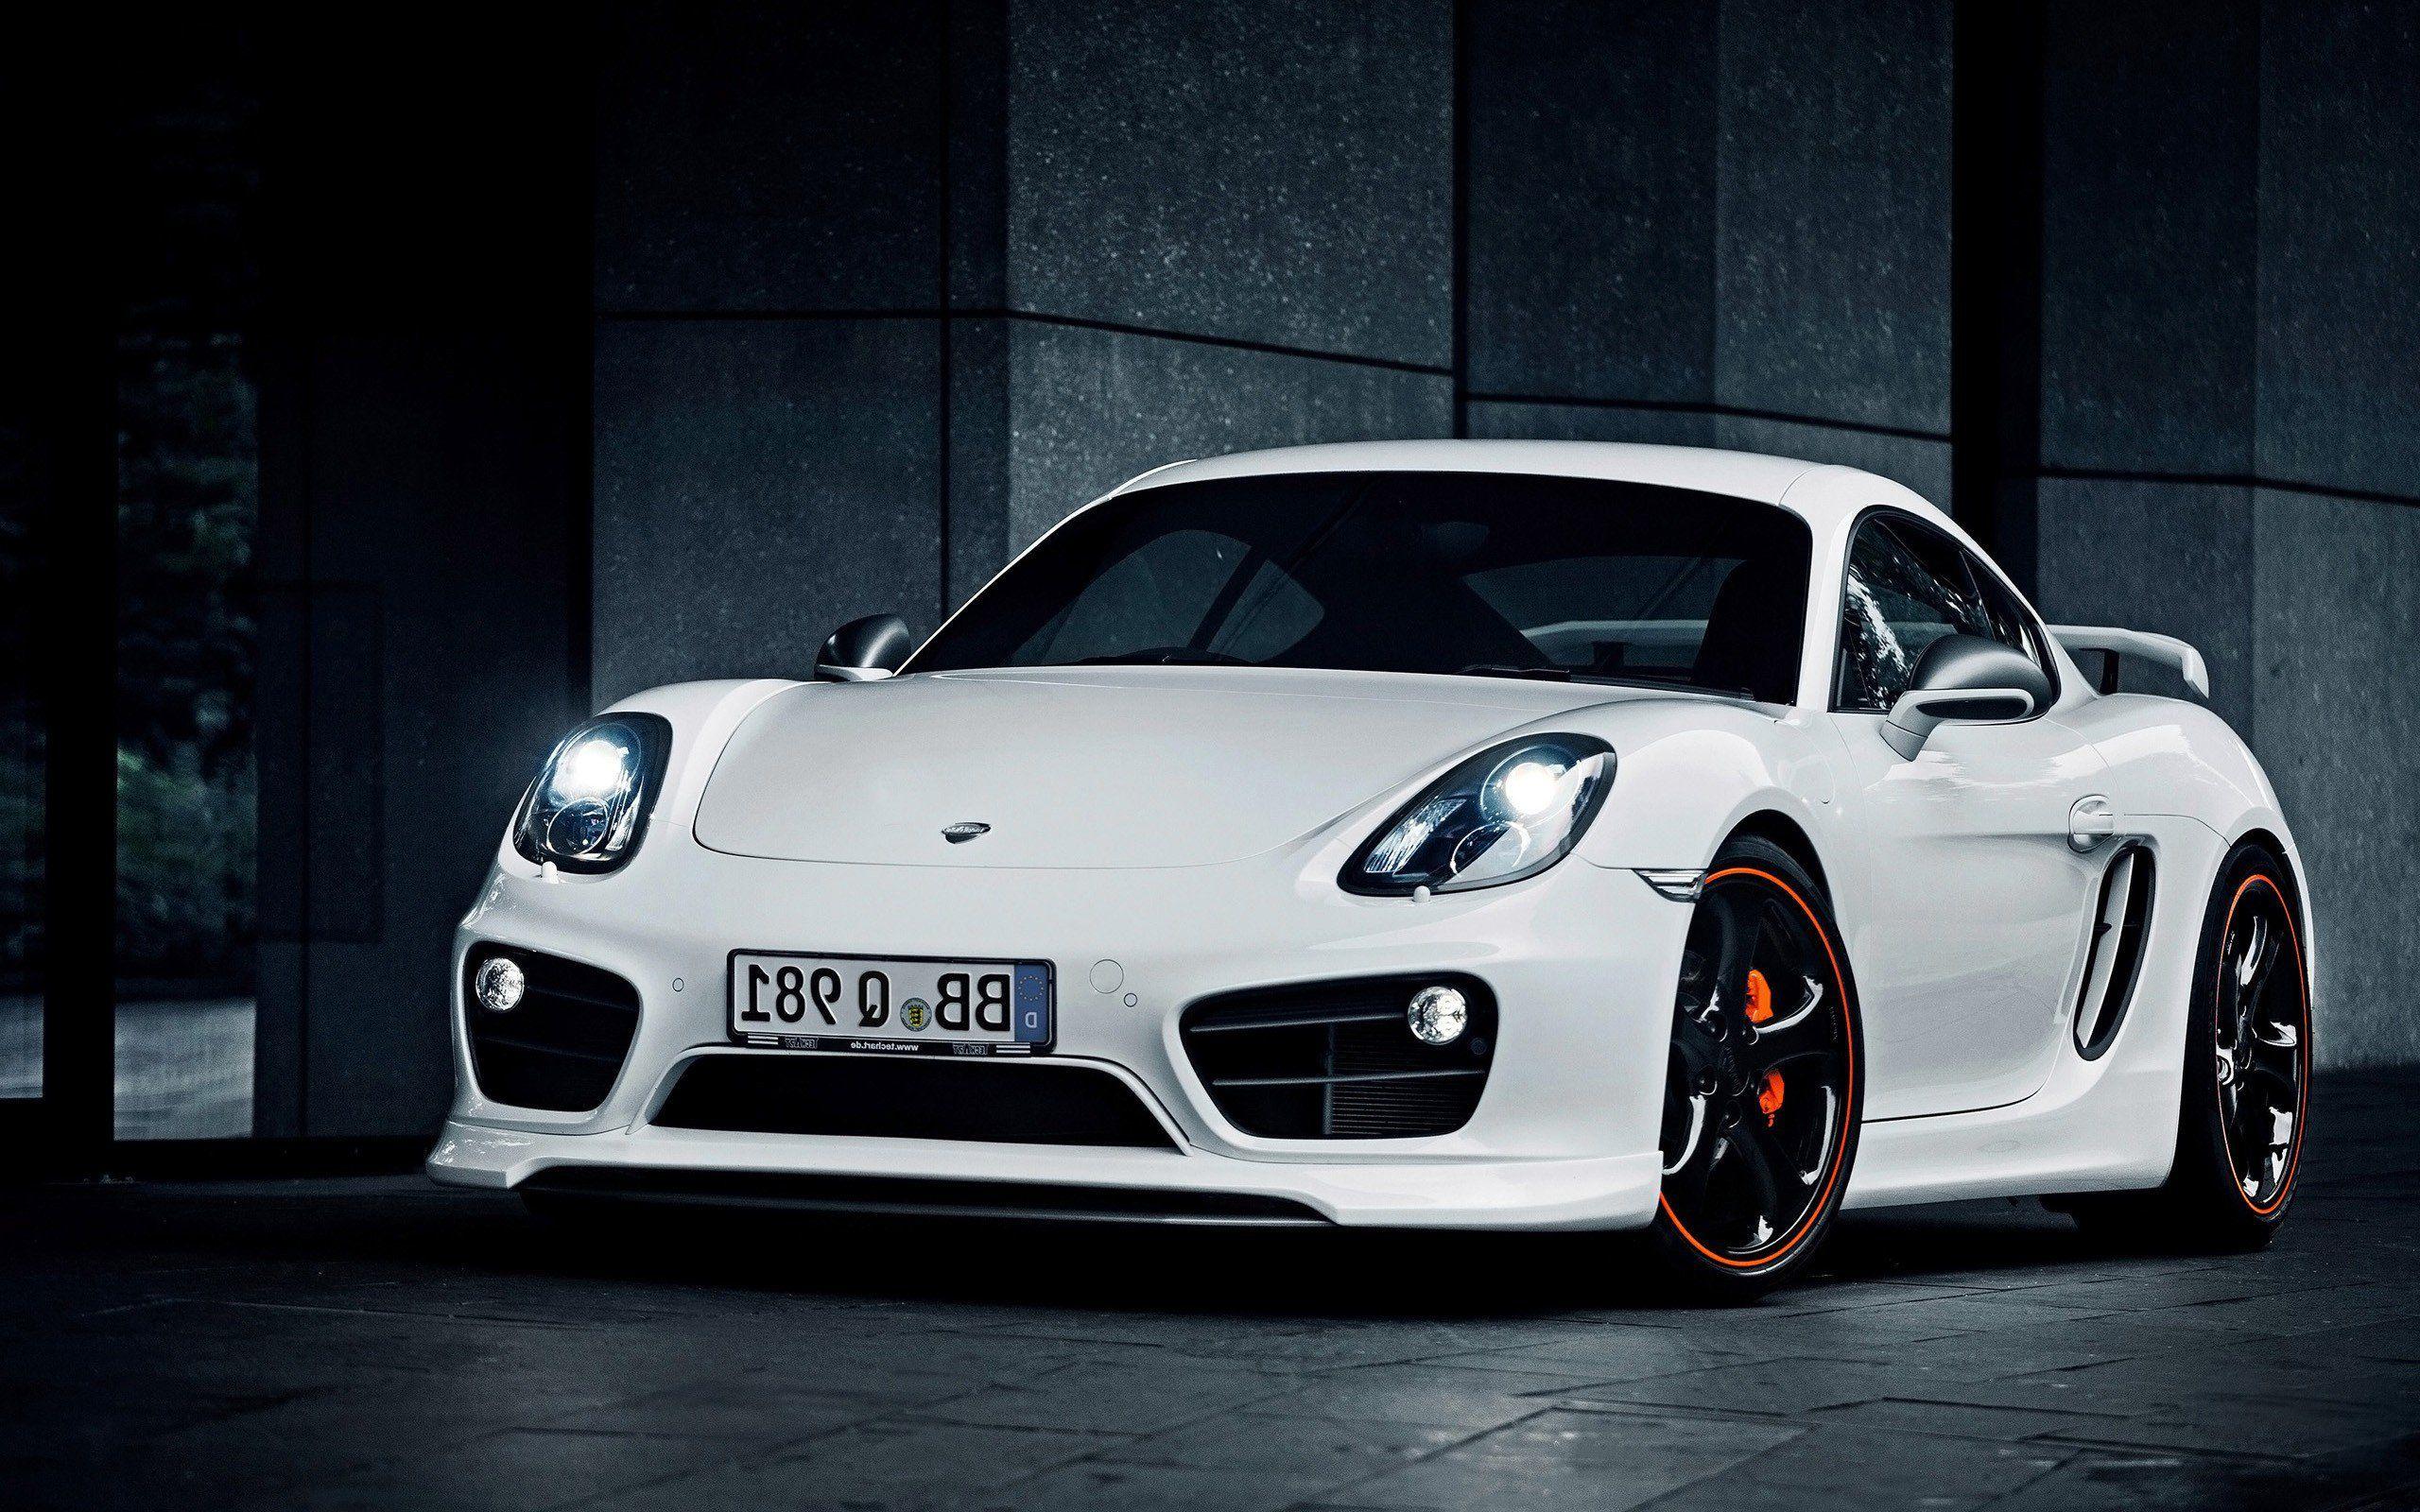 Porsche Cayman, HD Cars, 4k Wallpaper, Image, Background